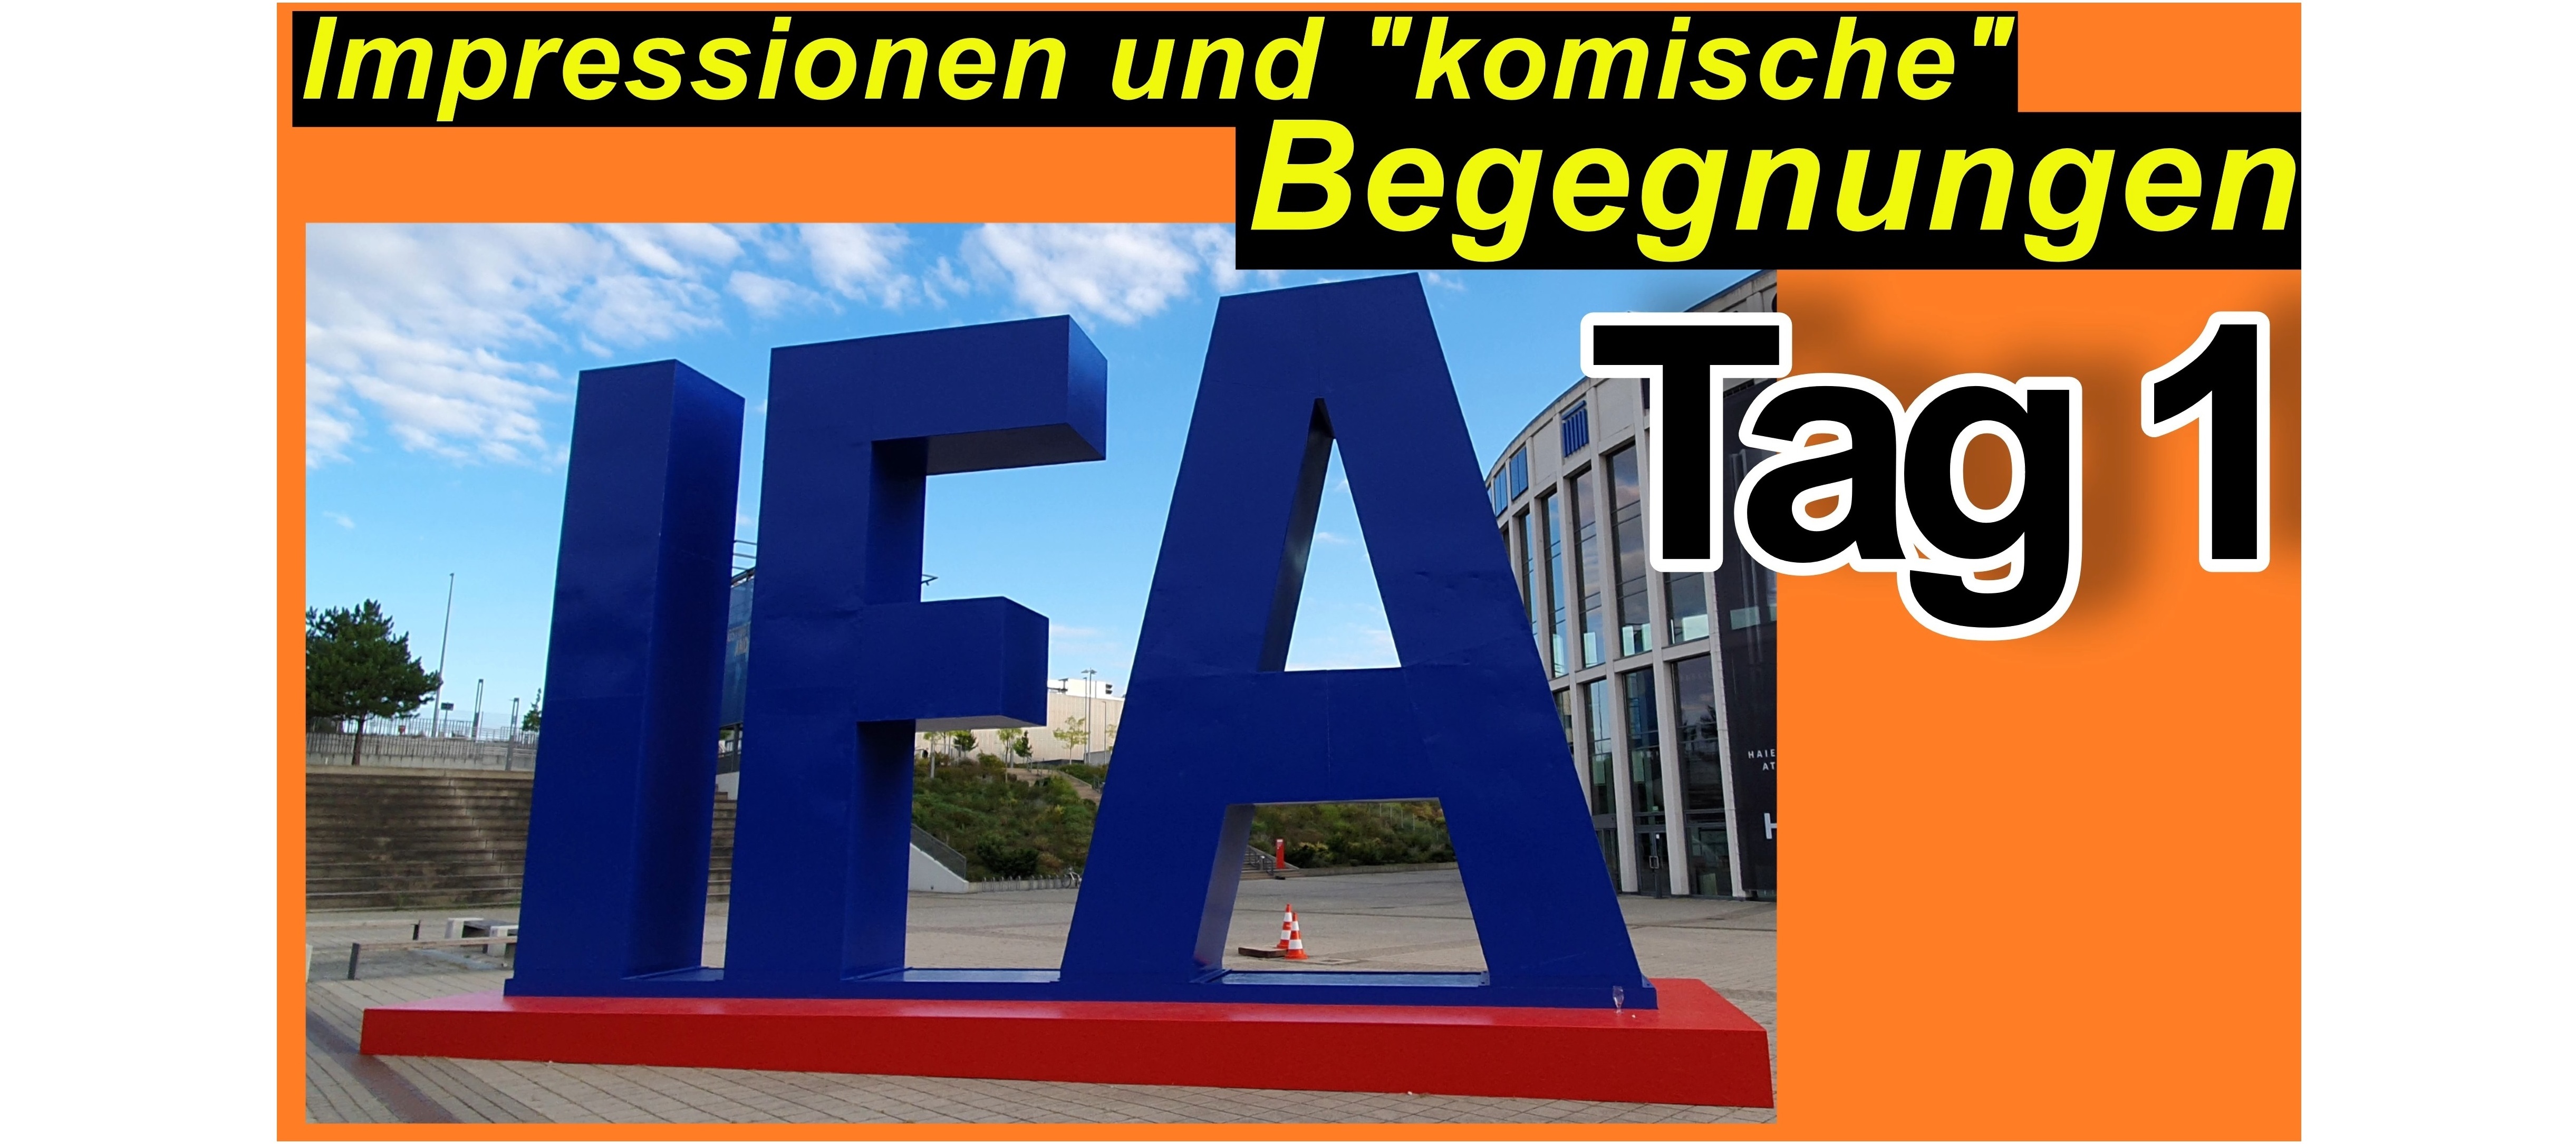 IFA 2022 in Berlin. Viele Impressionen und Eindrücke - Tag 1.